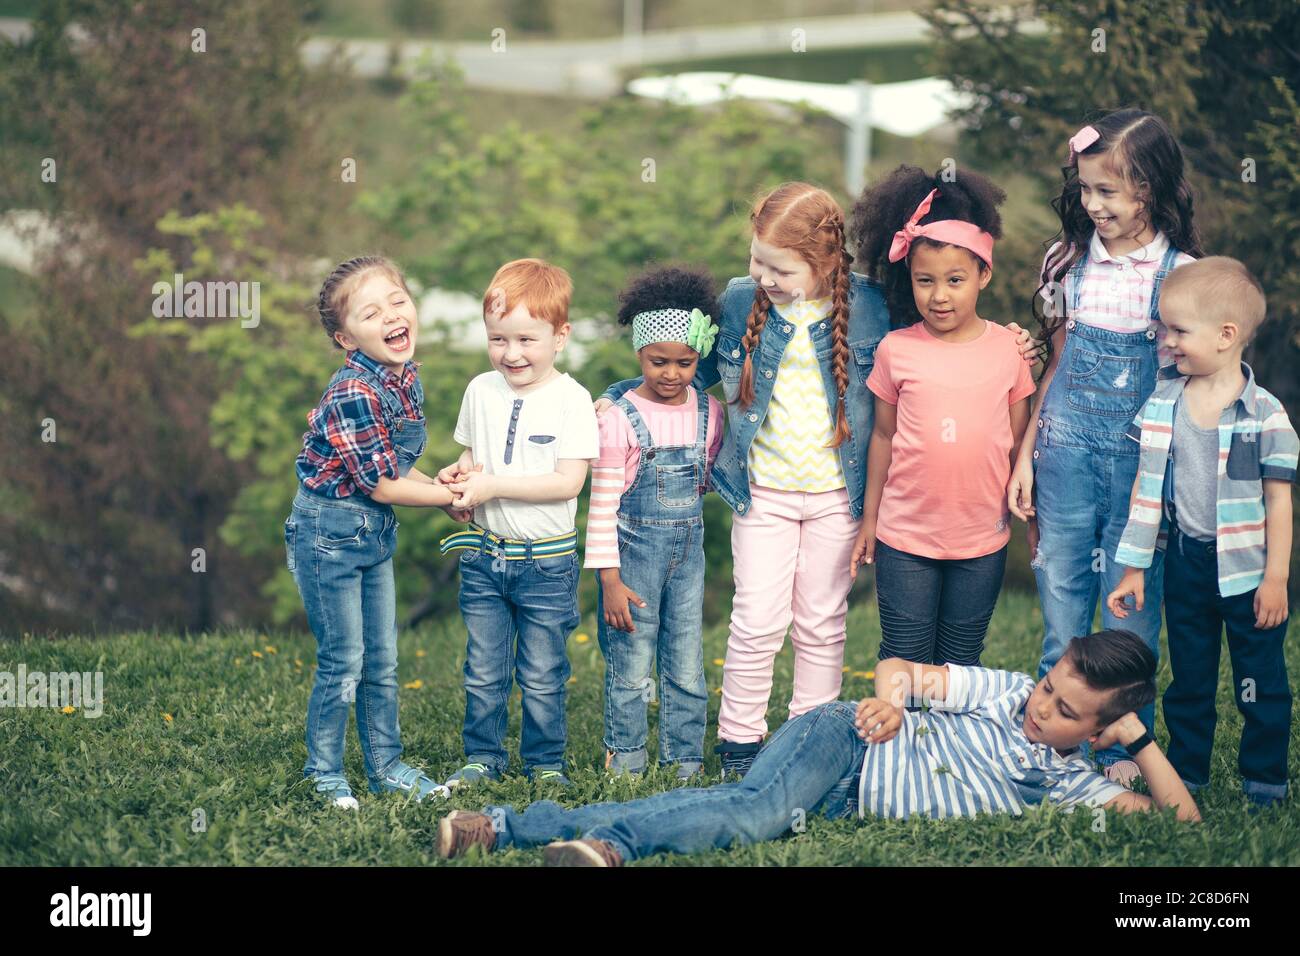 Enfants de cultures différentes ensemble. Dans le parc sur herbe verte en pleine longueur. Le concept des peuples, de l'amitié, de l'enfance et de la coopération interculturelle Banque D'Images